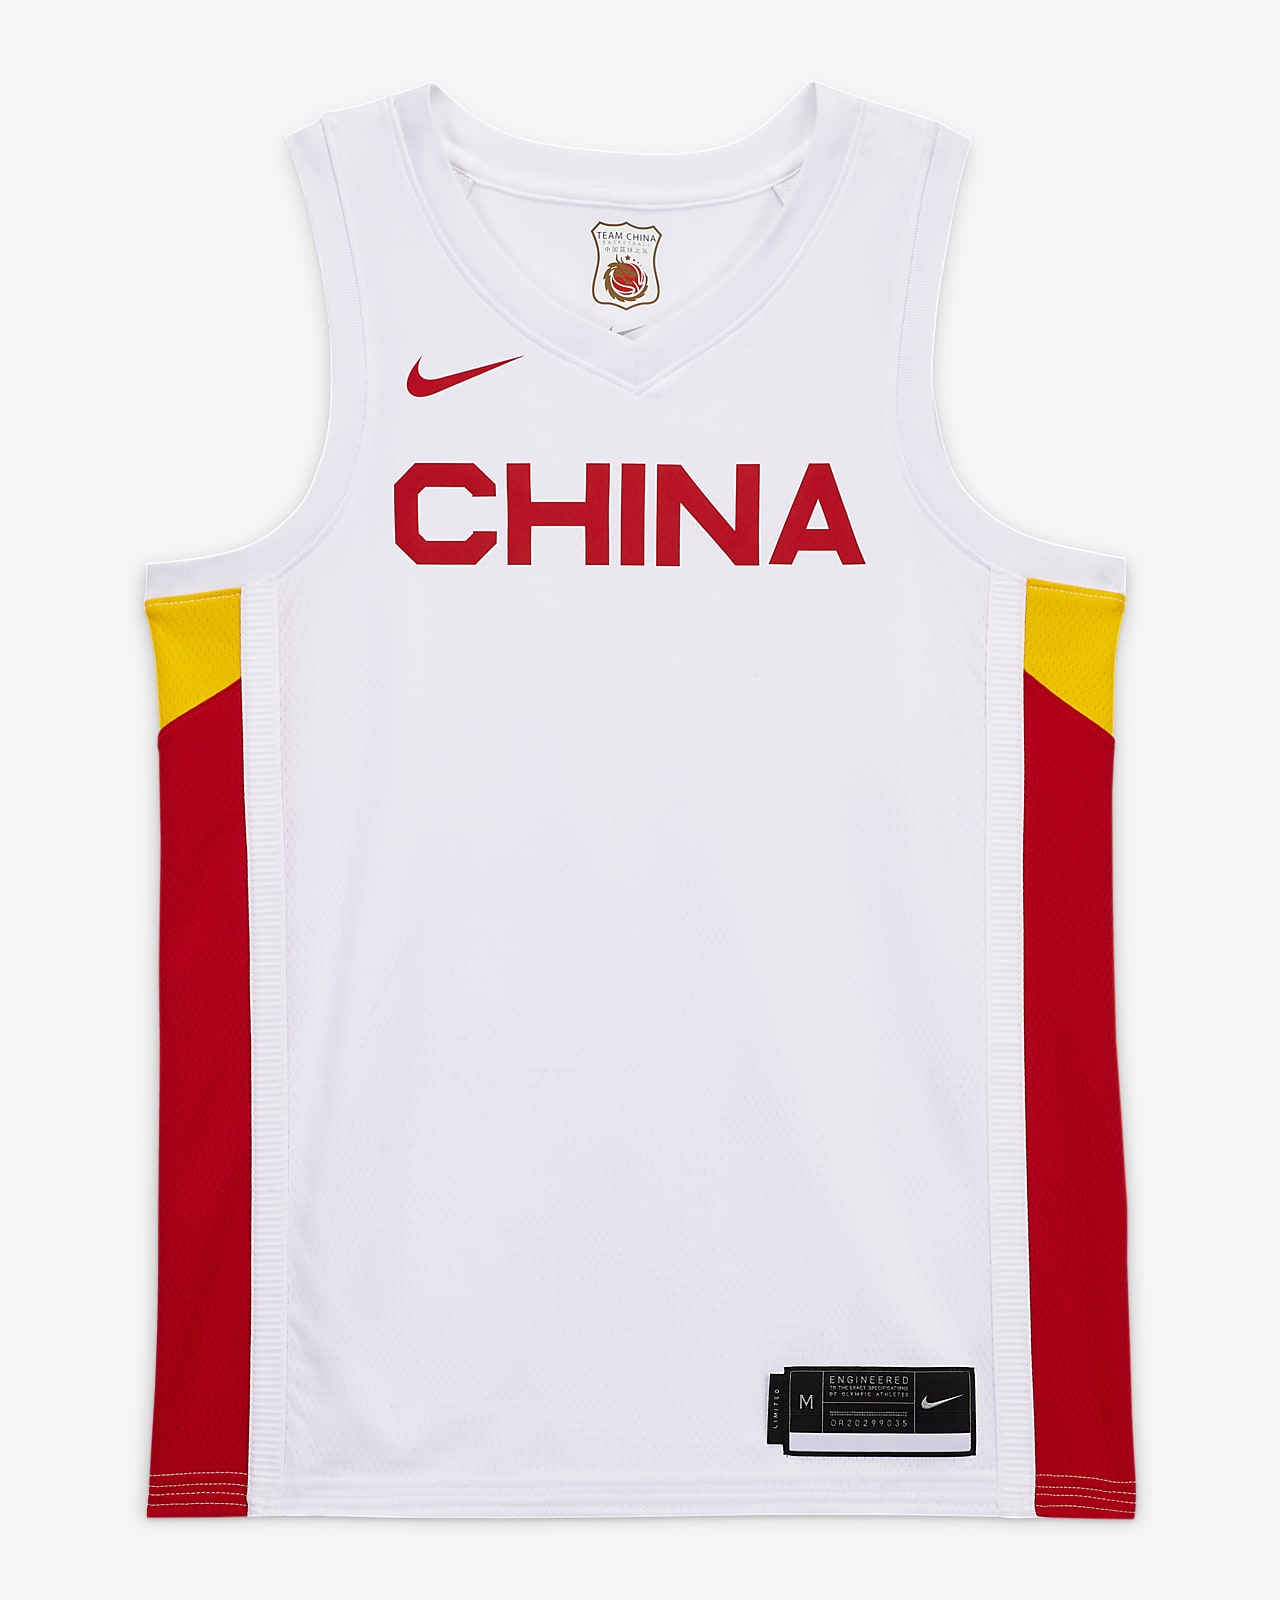 china nike jersey